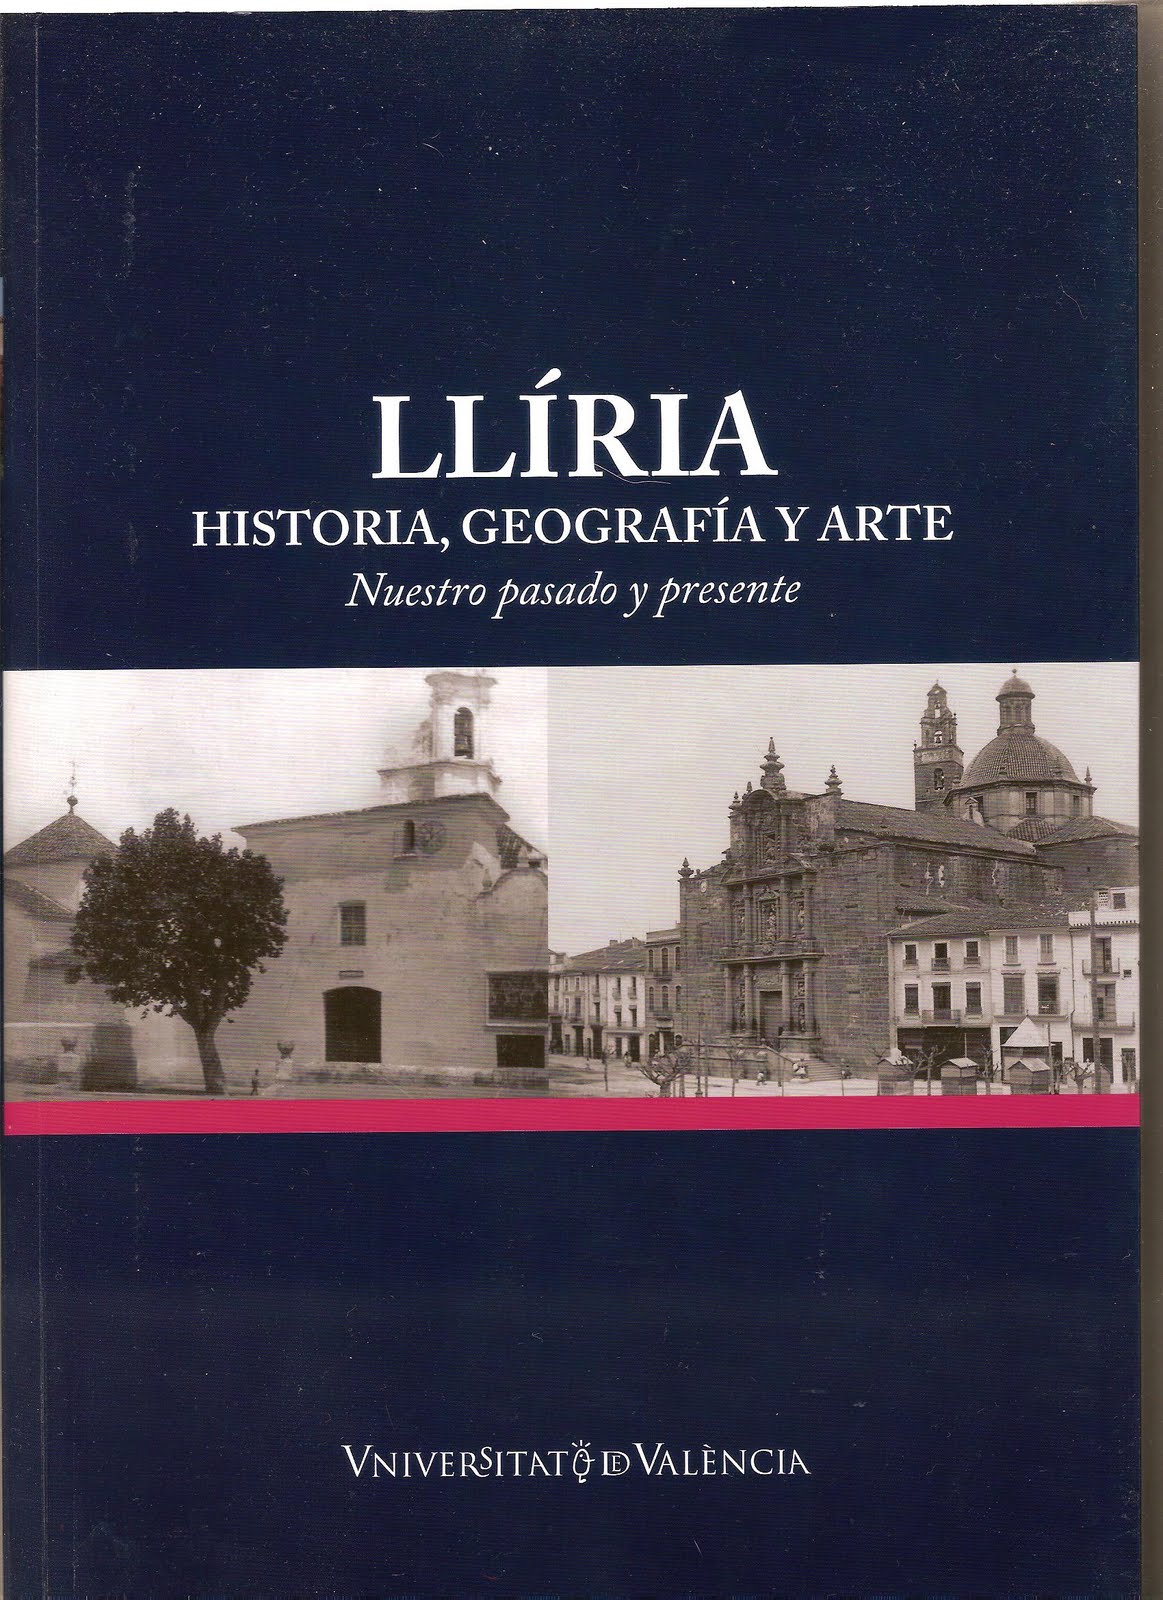 Llíria, historia, geografía y arte: nuestro pasado y presente - Dialnet